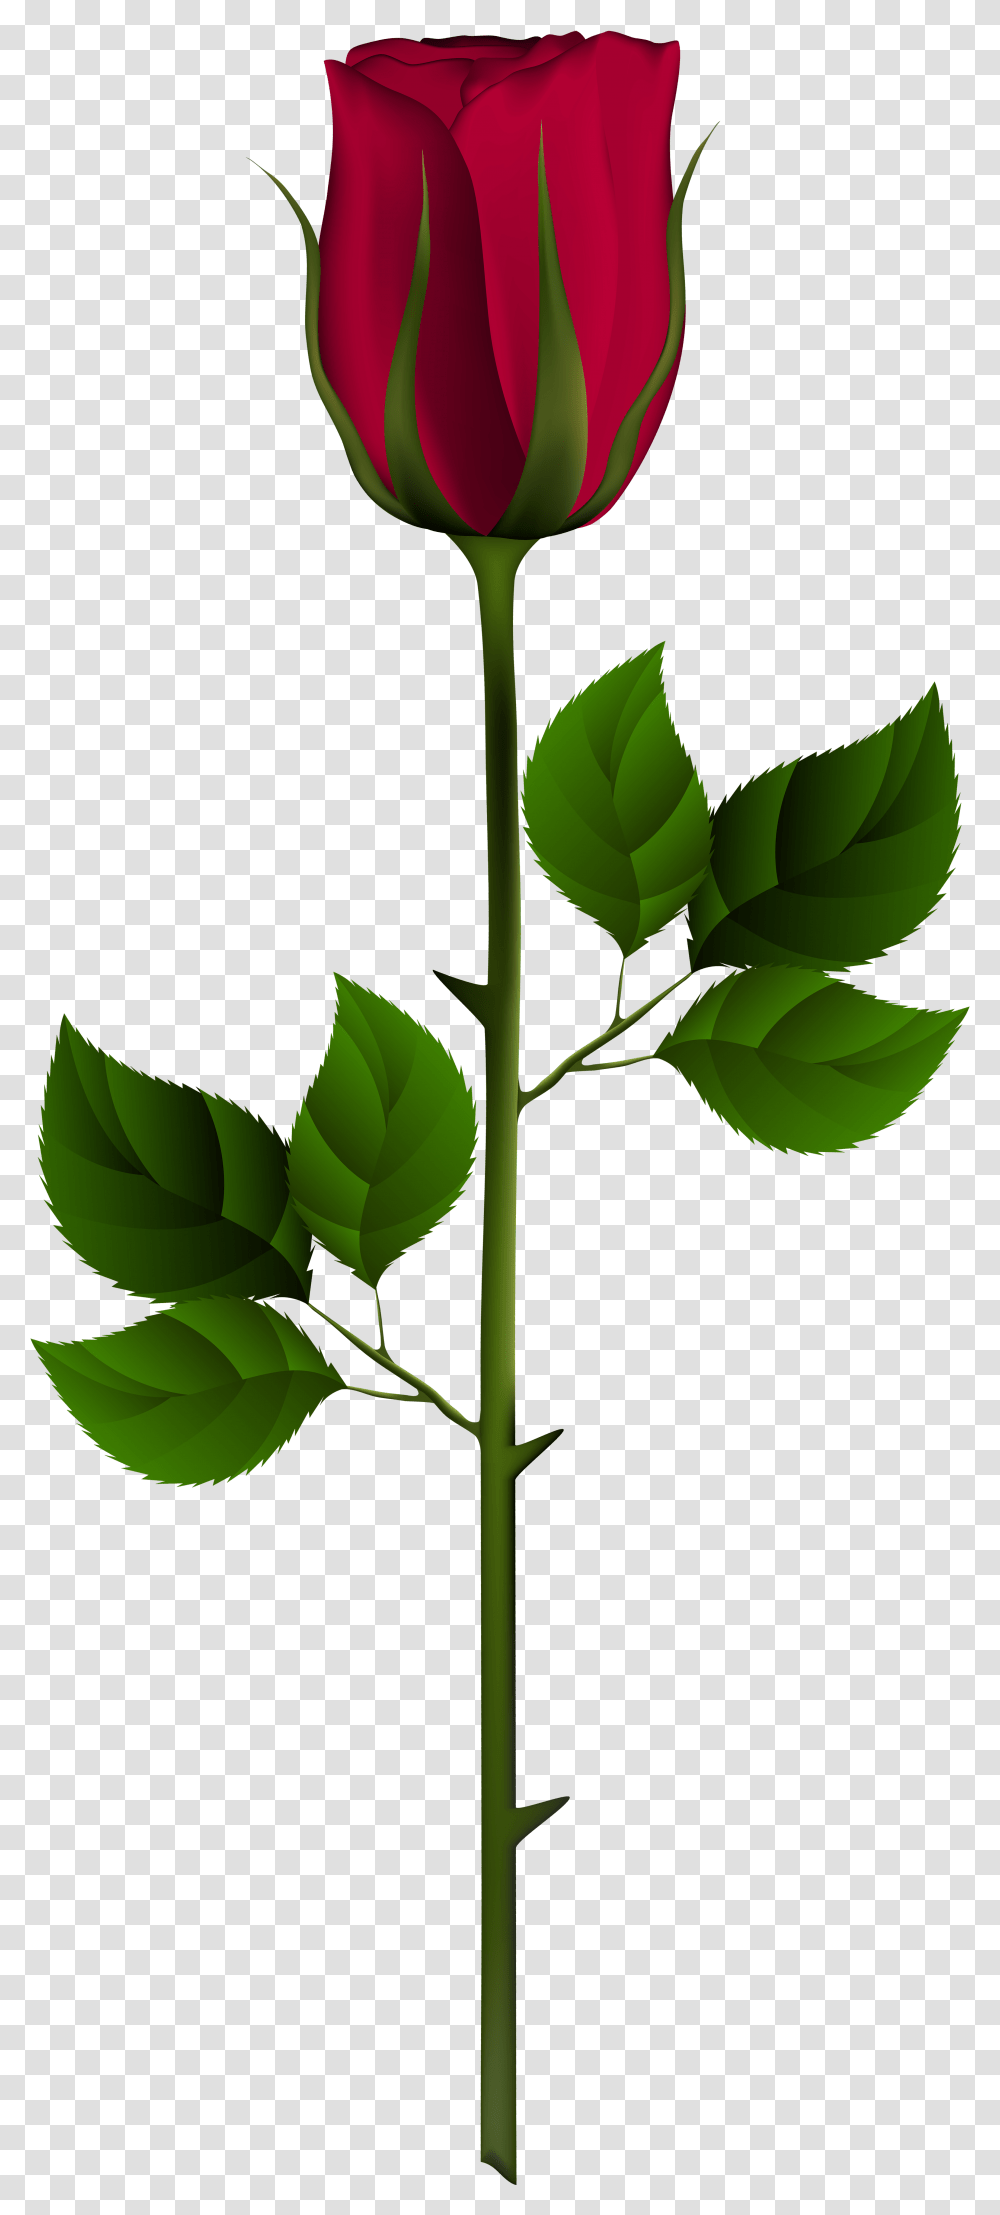 Red Rose Bud, Leaf, Plant, Green, Flower Transparent Png